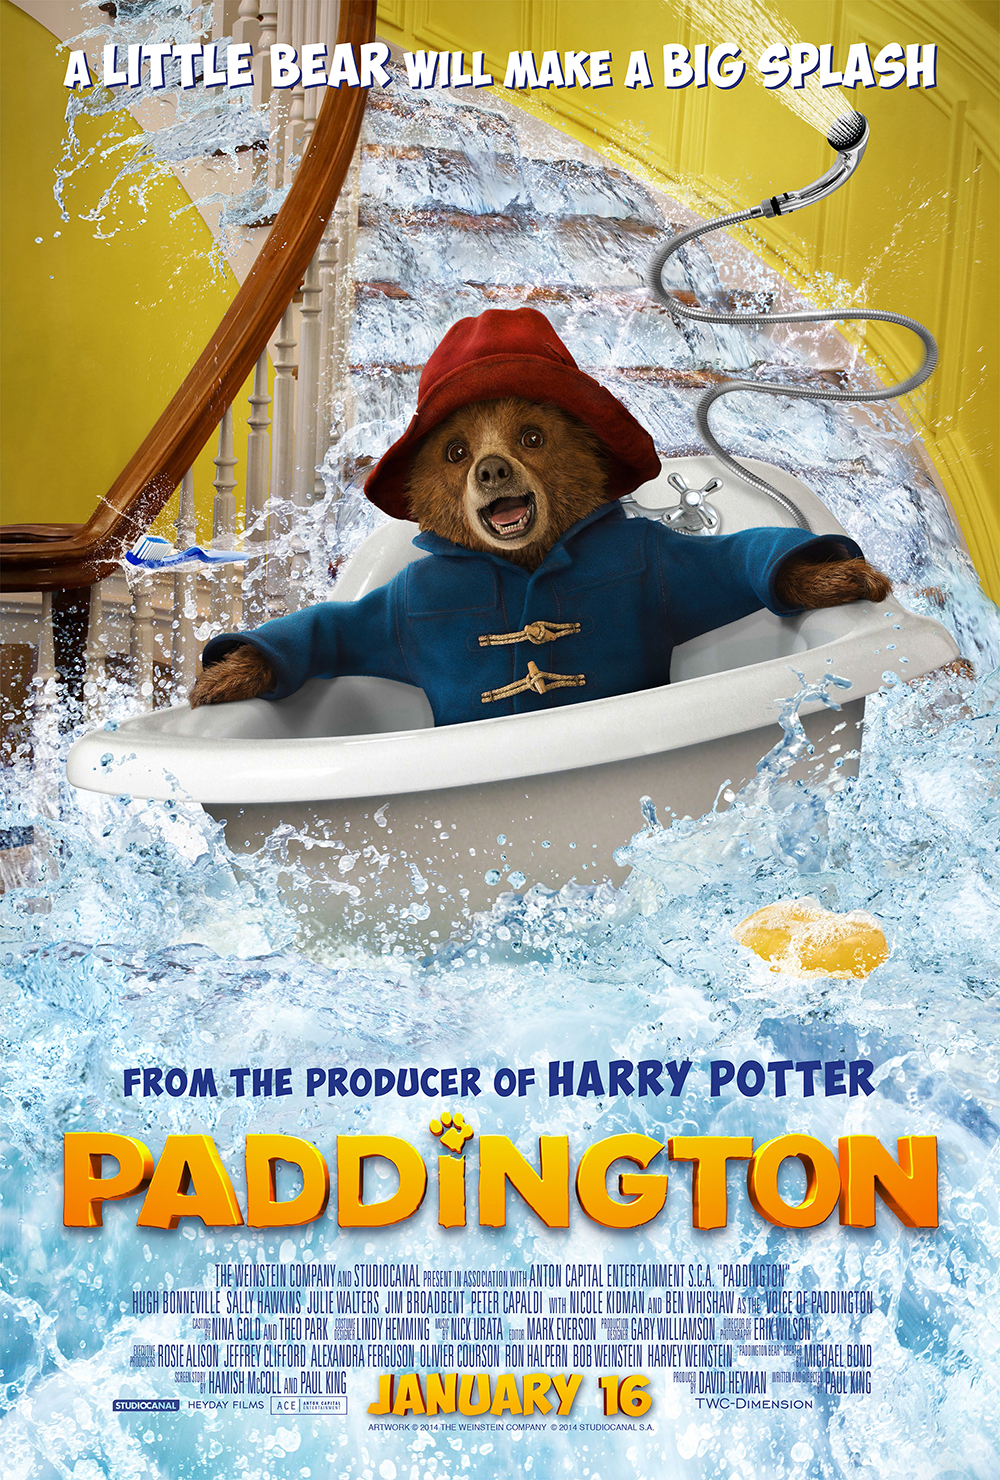 Paddington the Movie #PaddingtonMovie